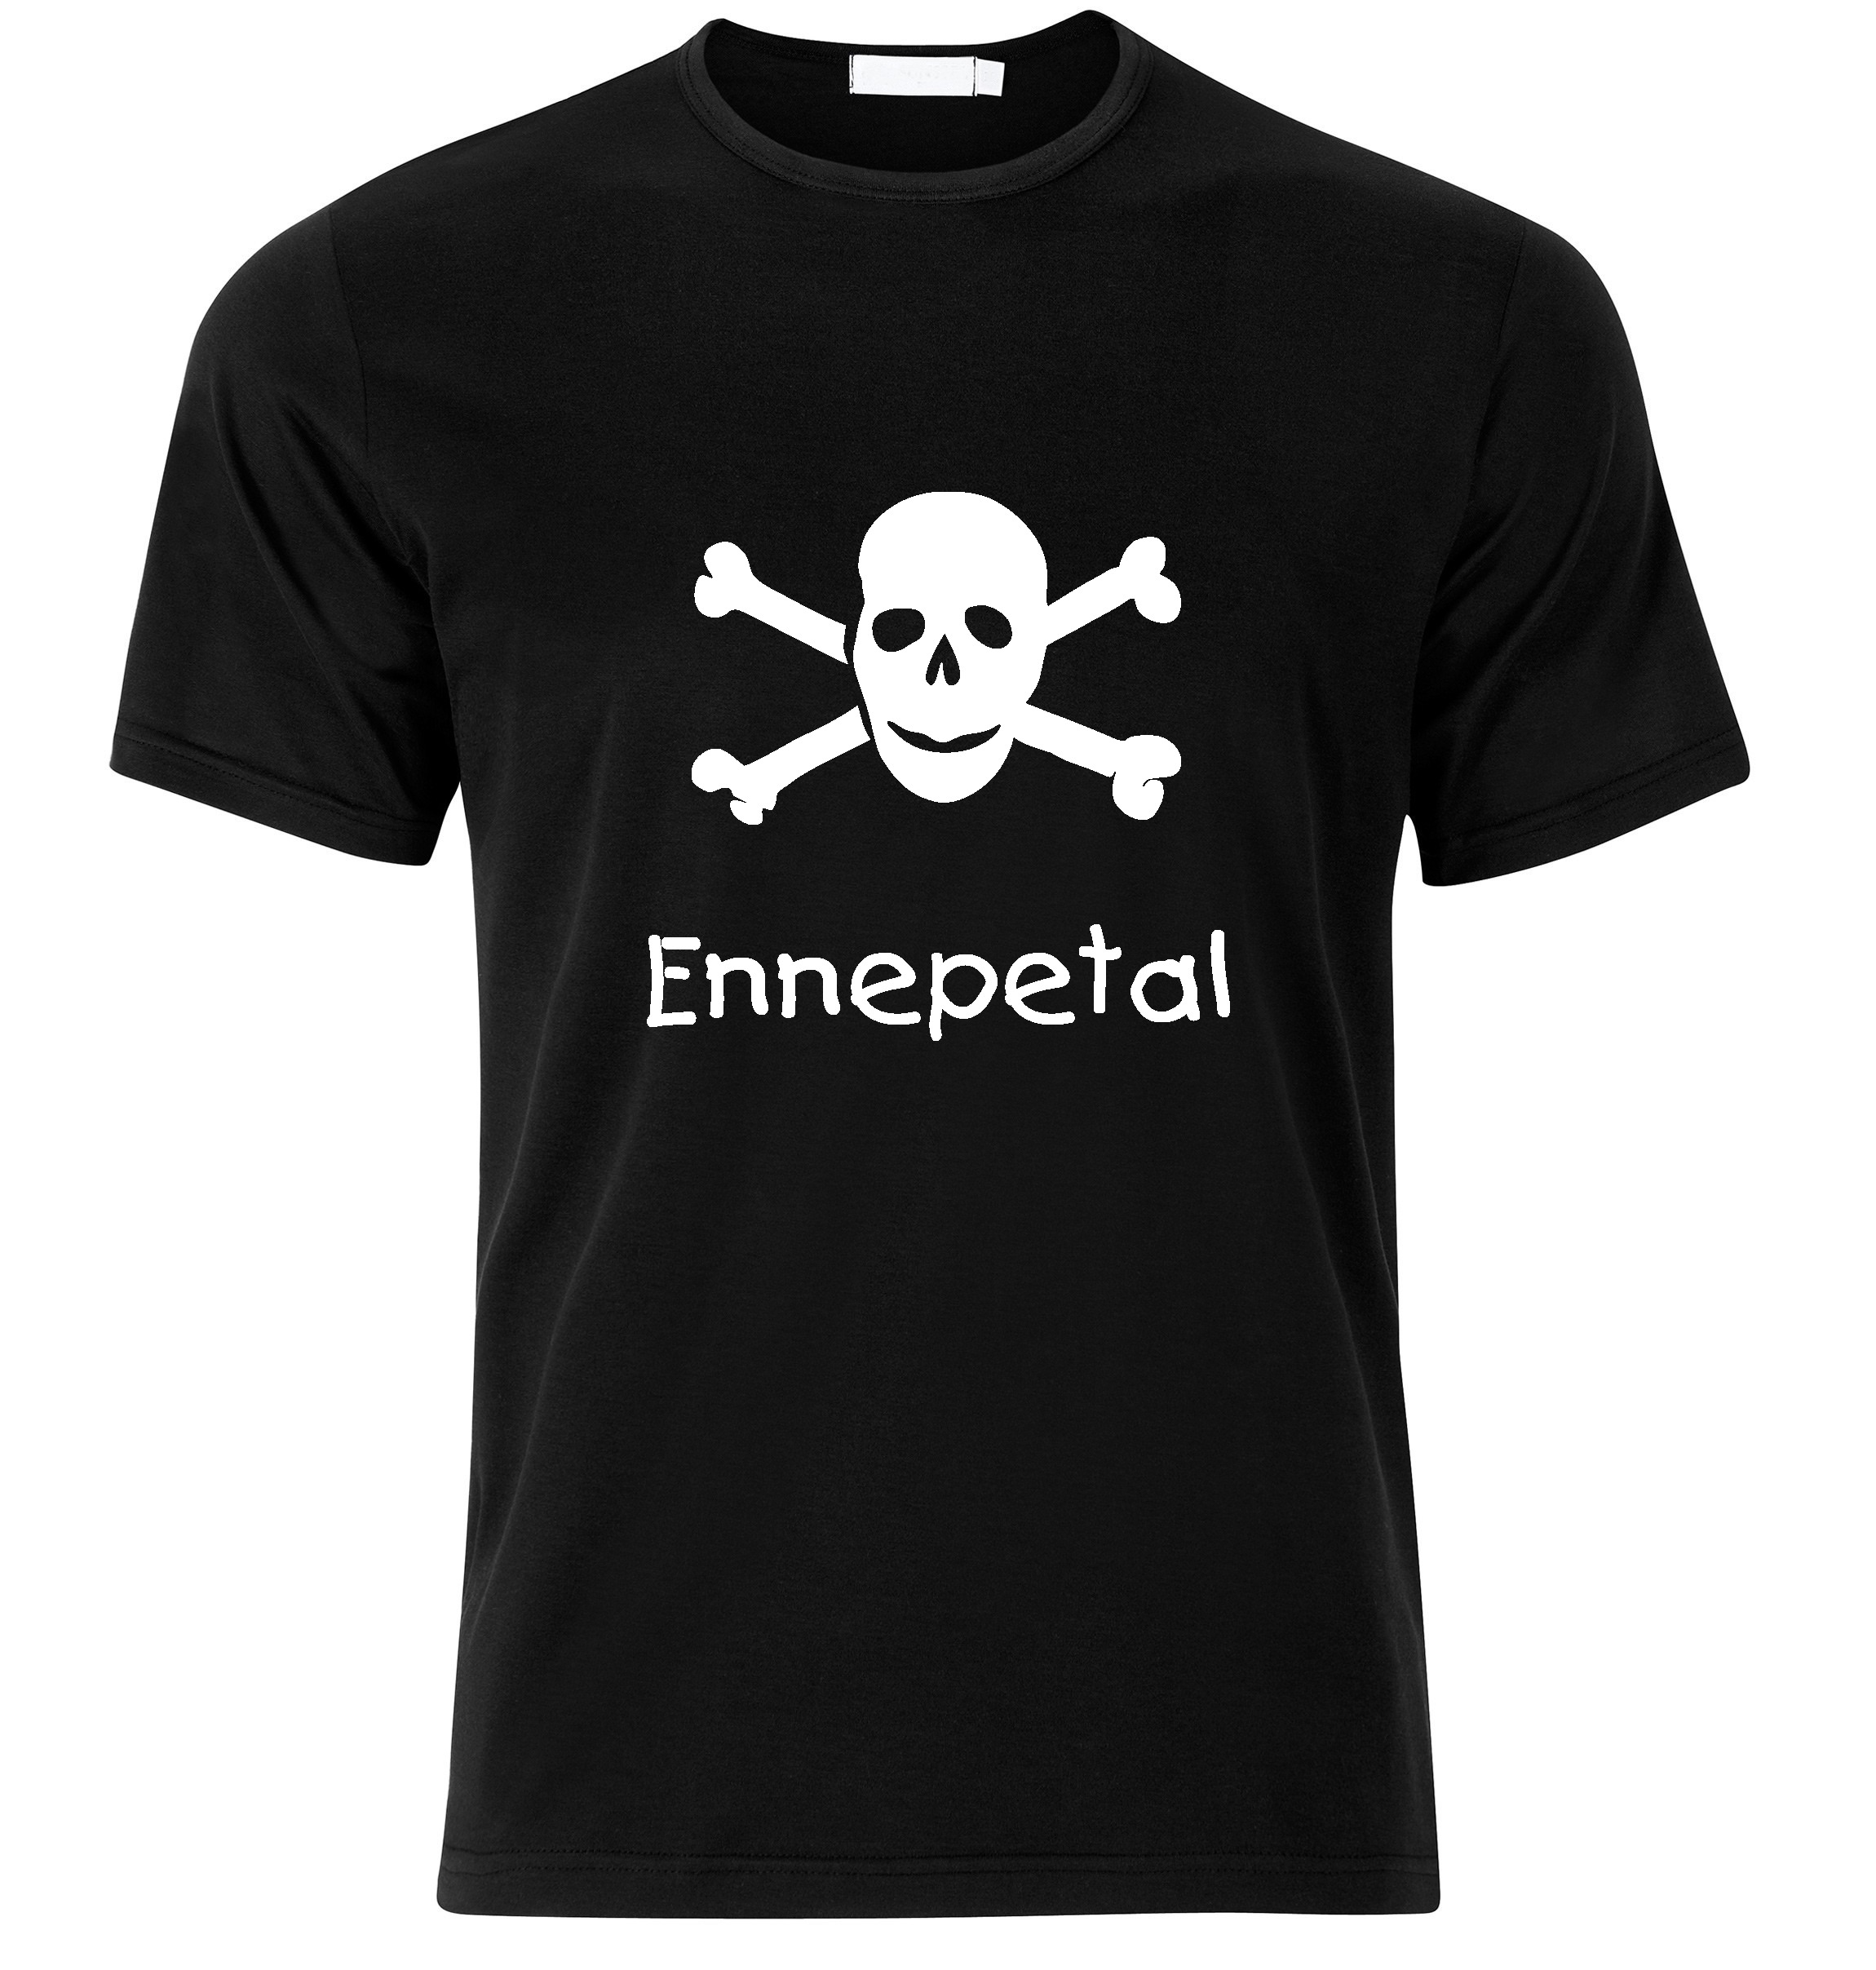 T-Shirt Ennepetal Jolly Roger, Totenkopf